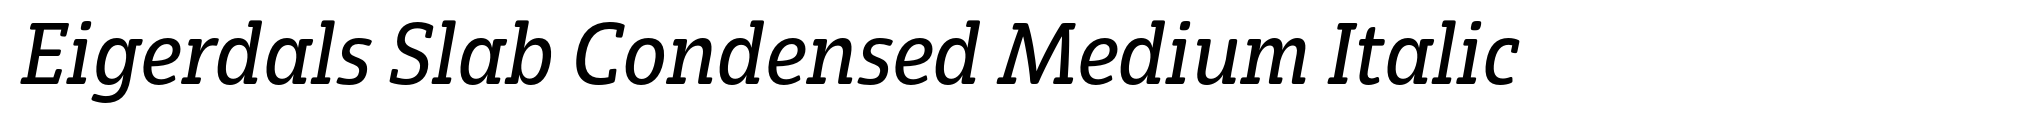 Eigerdals Slab Condensed Medium Italic image